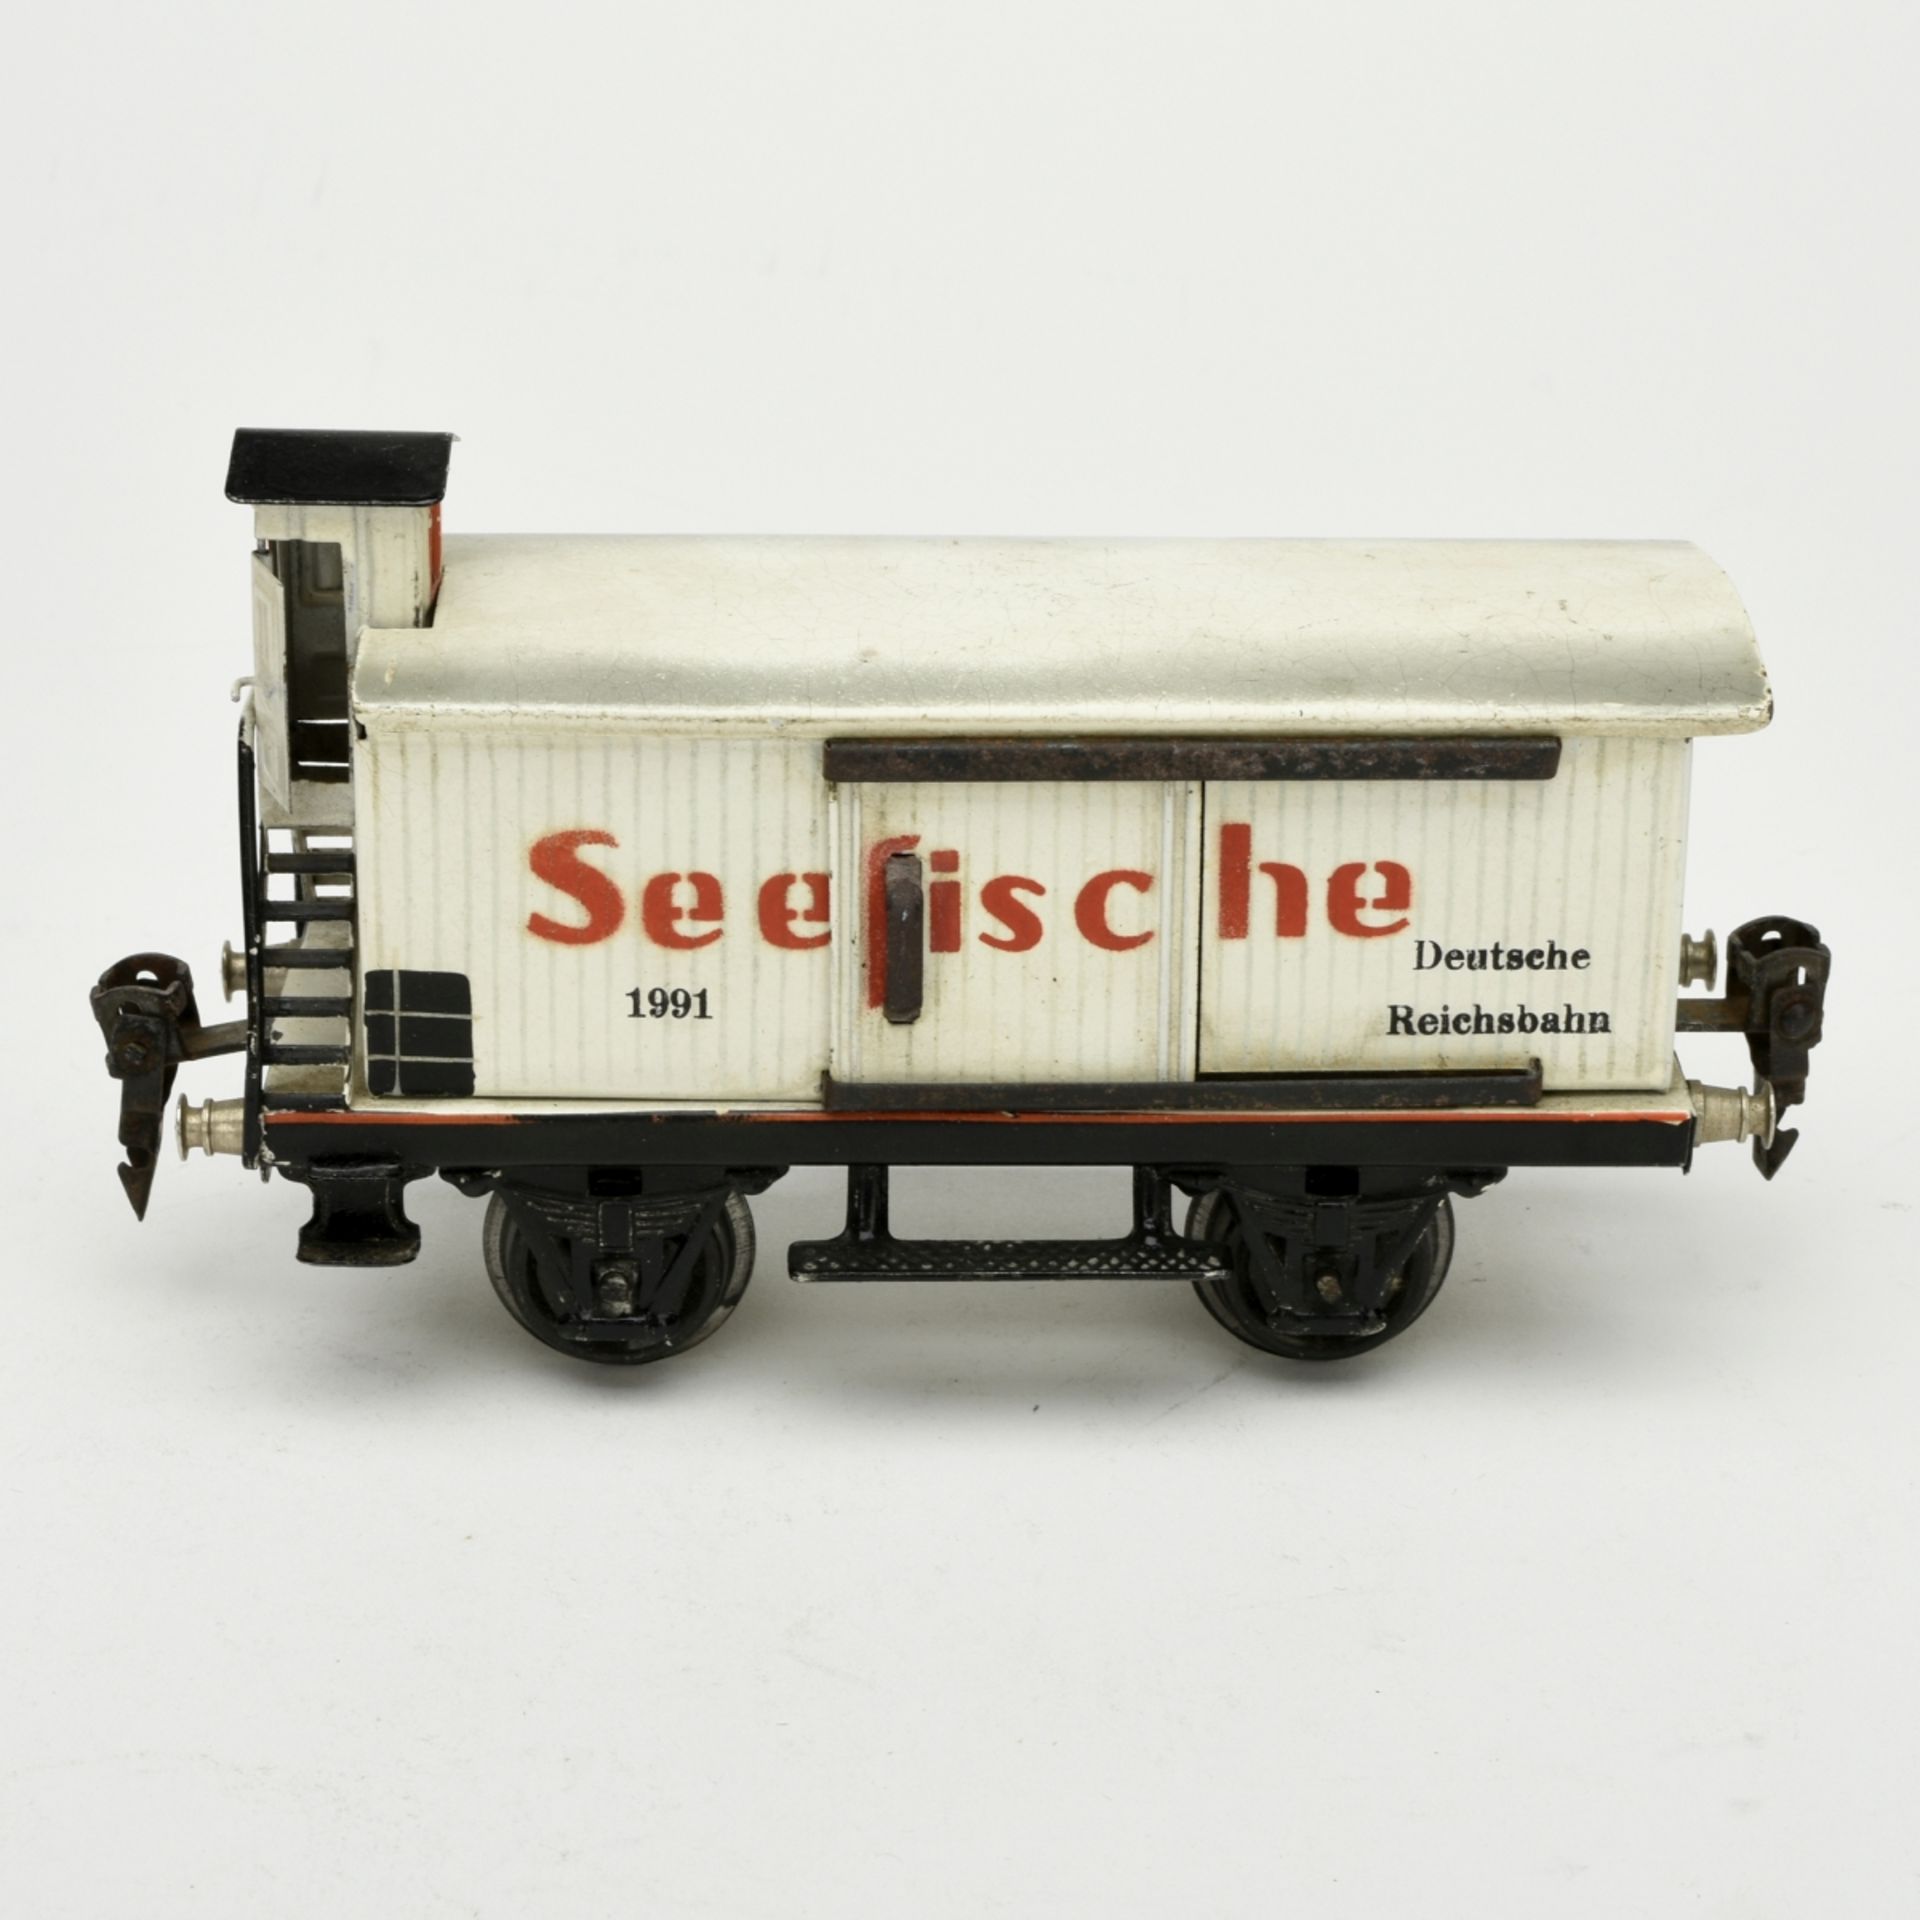 Seefischwagen - Image 2 of 5